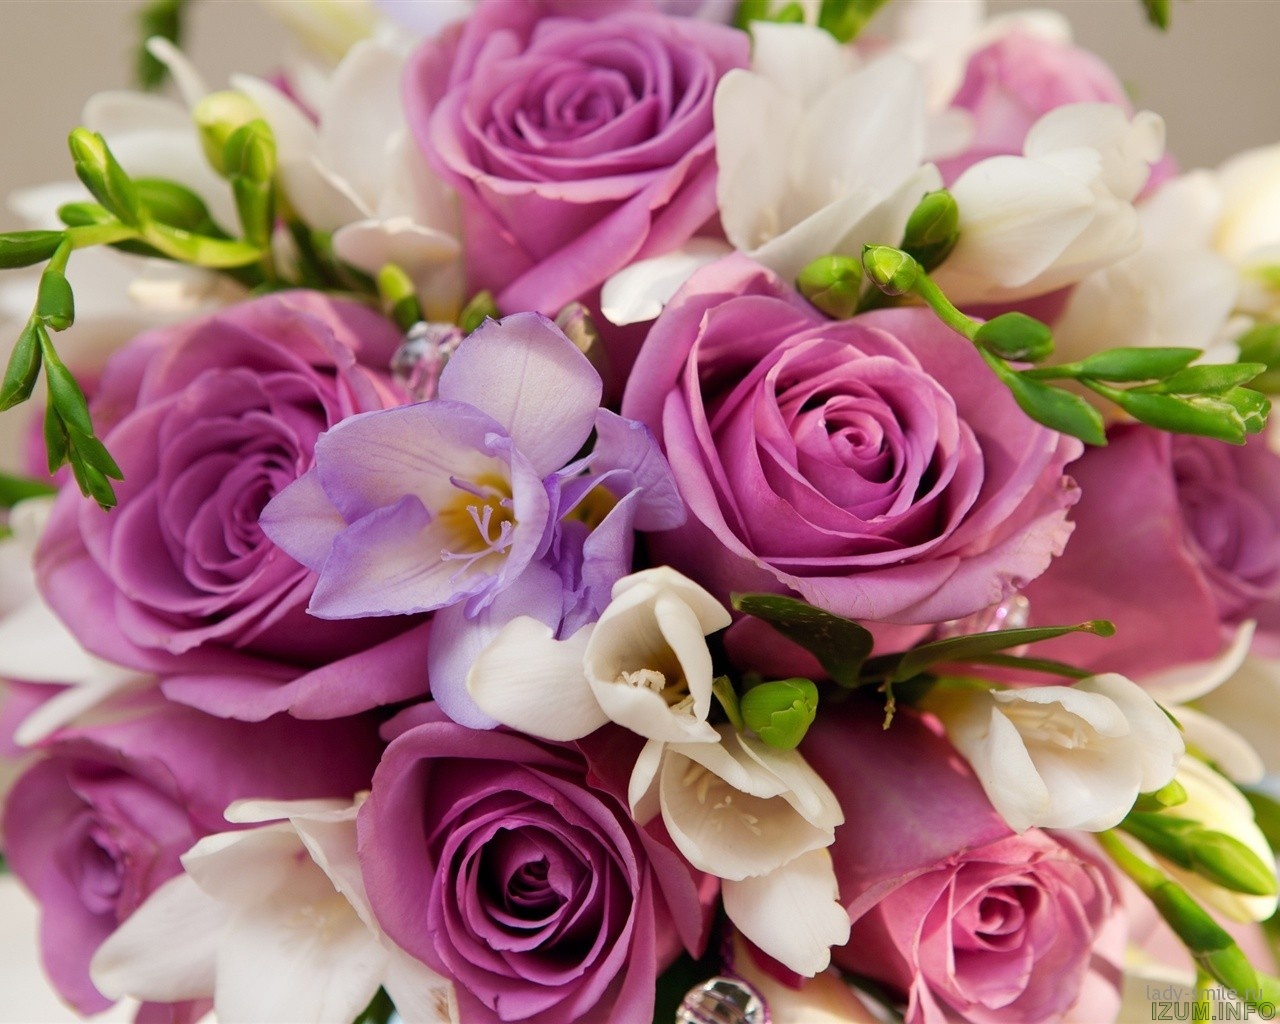 Violet-flowers-roses-bouquet_1280x1024.jpg